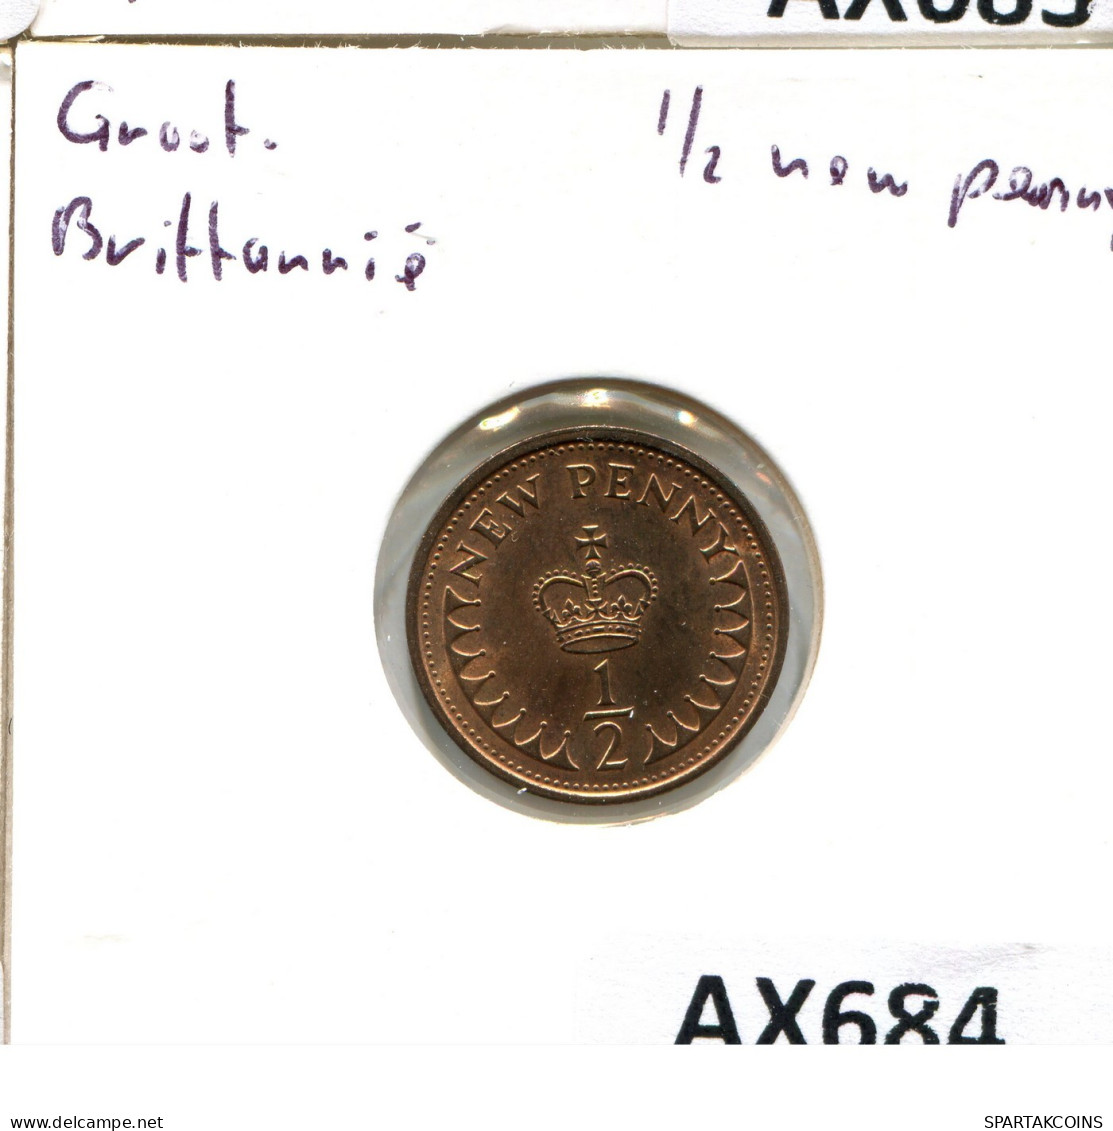 NEW PENNY 1974 UK GBAN BRETAÑA GREAT BRITAIN Moneda #AX684.E.A - 1 Penny & 1 New Penny